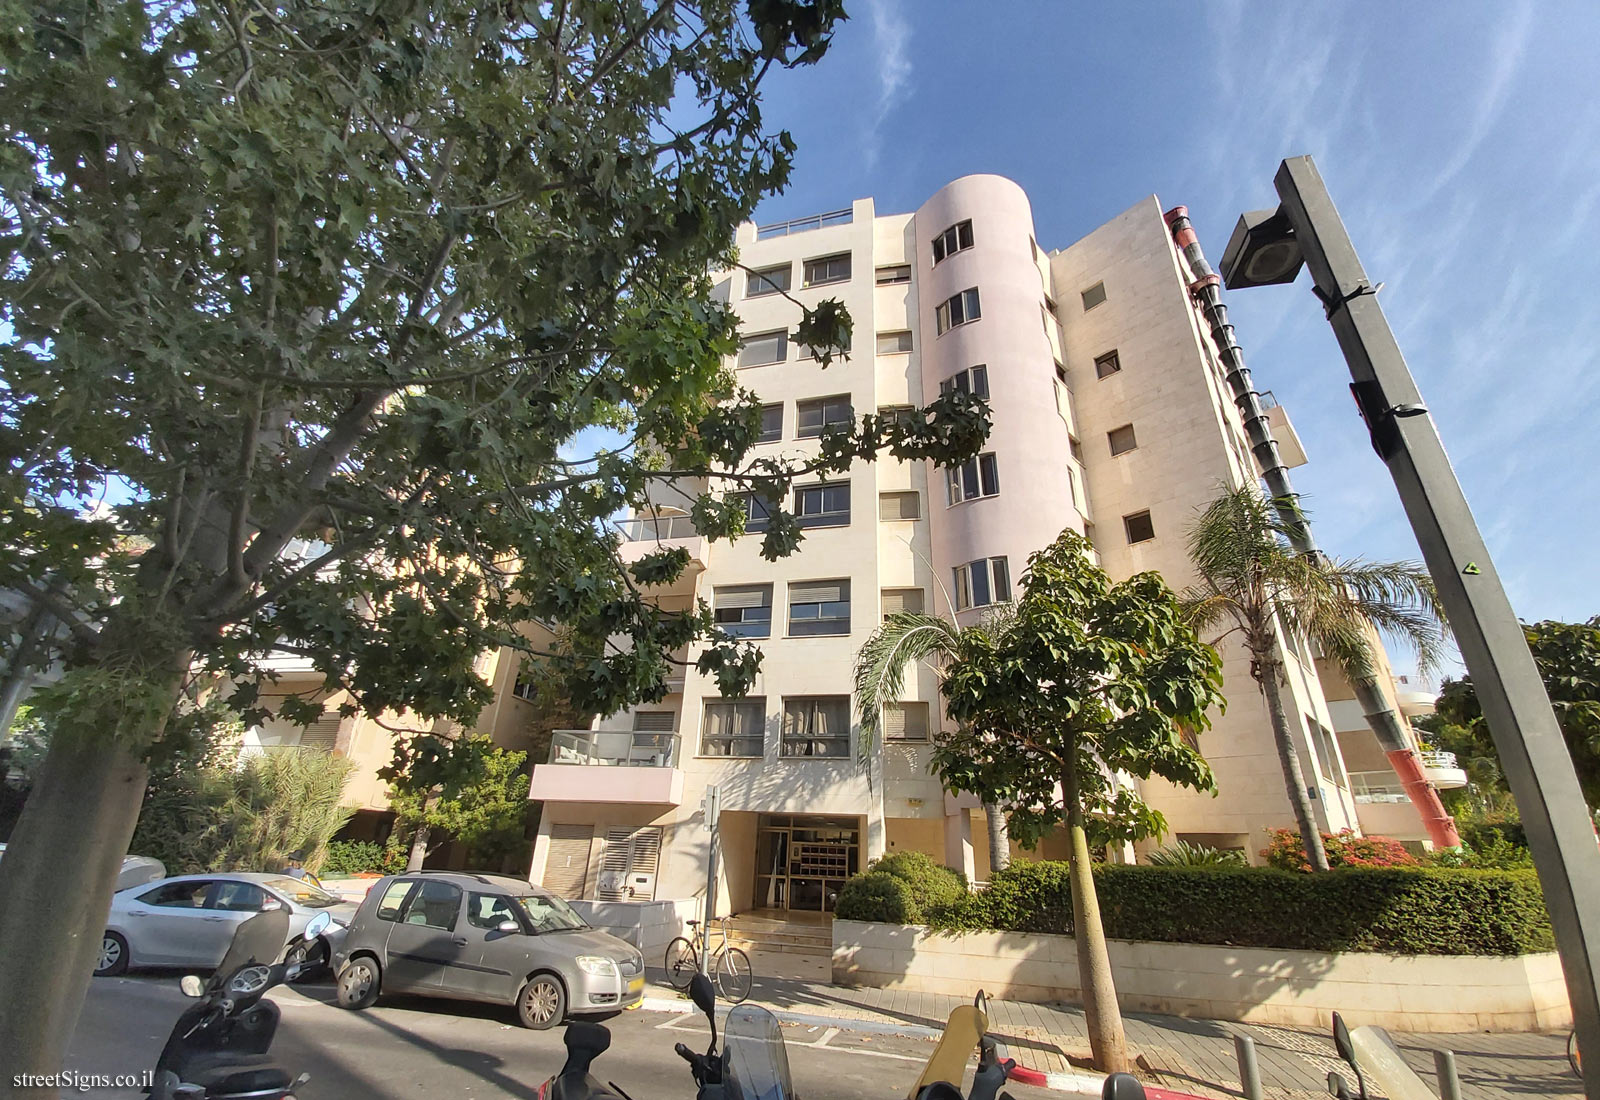 The house of Asher Barash - Mendele Mokher Sfarim St 15, Tel Aviv-Yafo, Israel